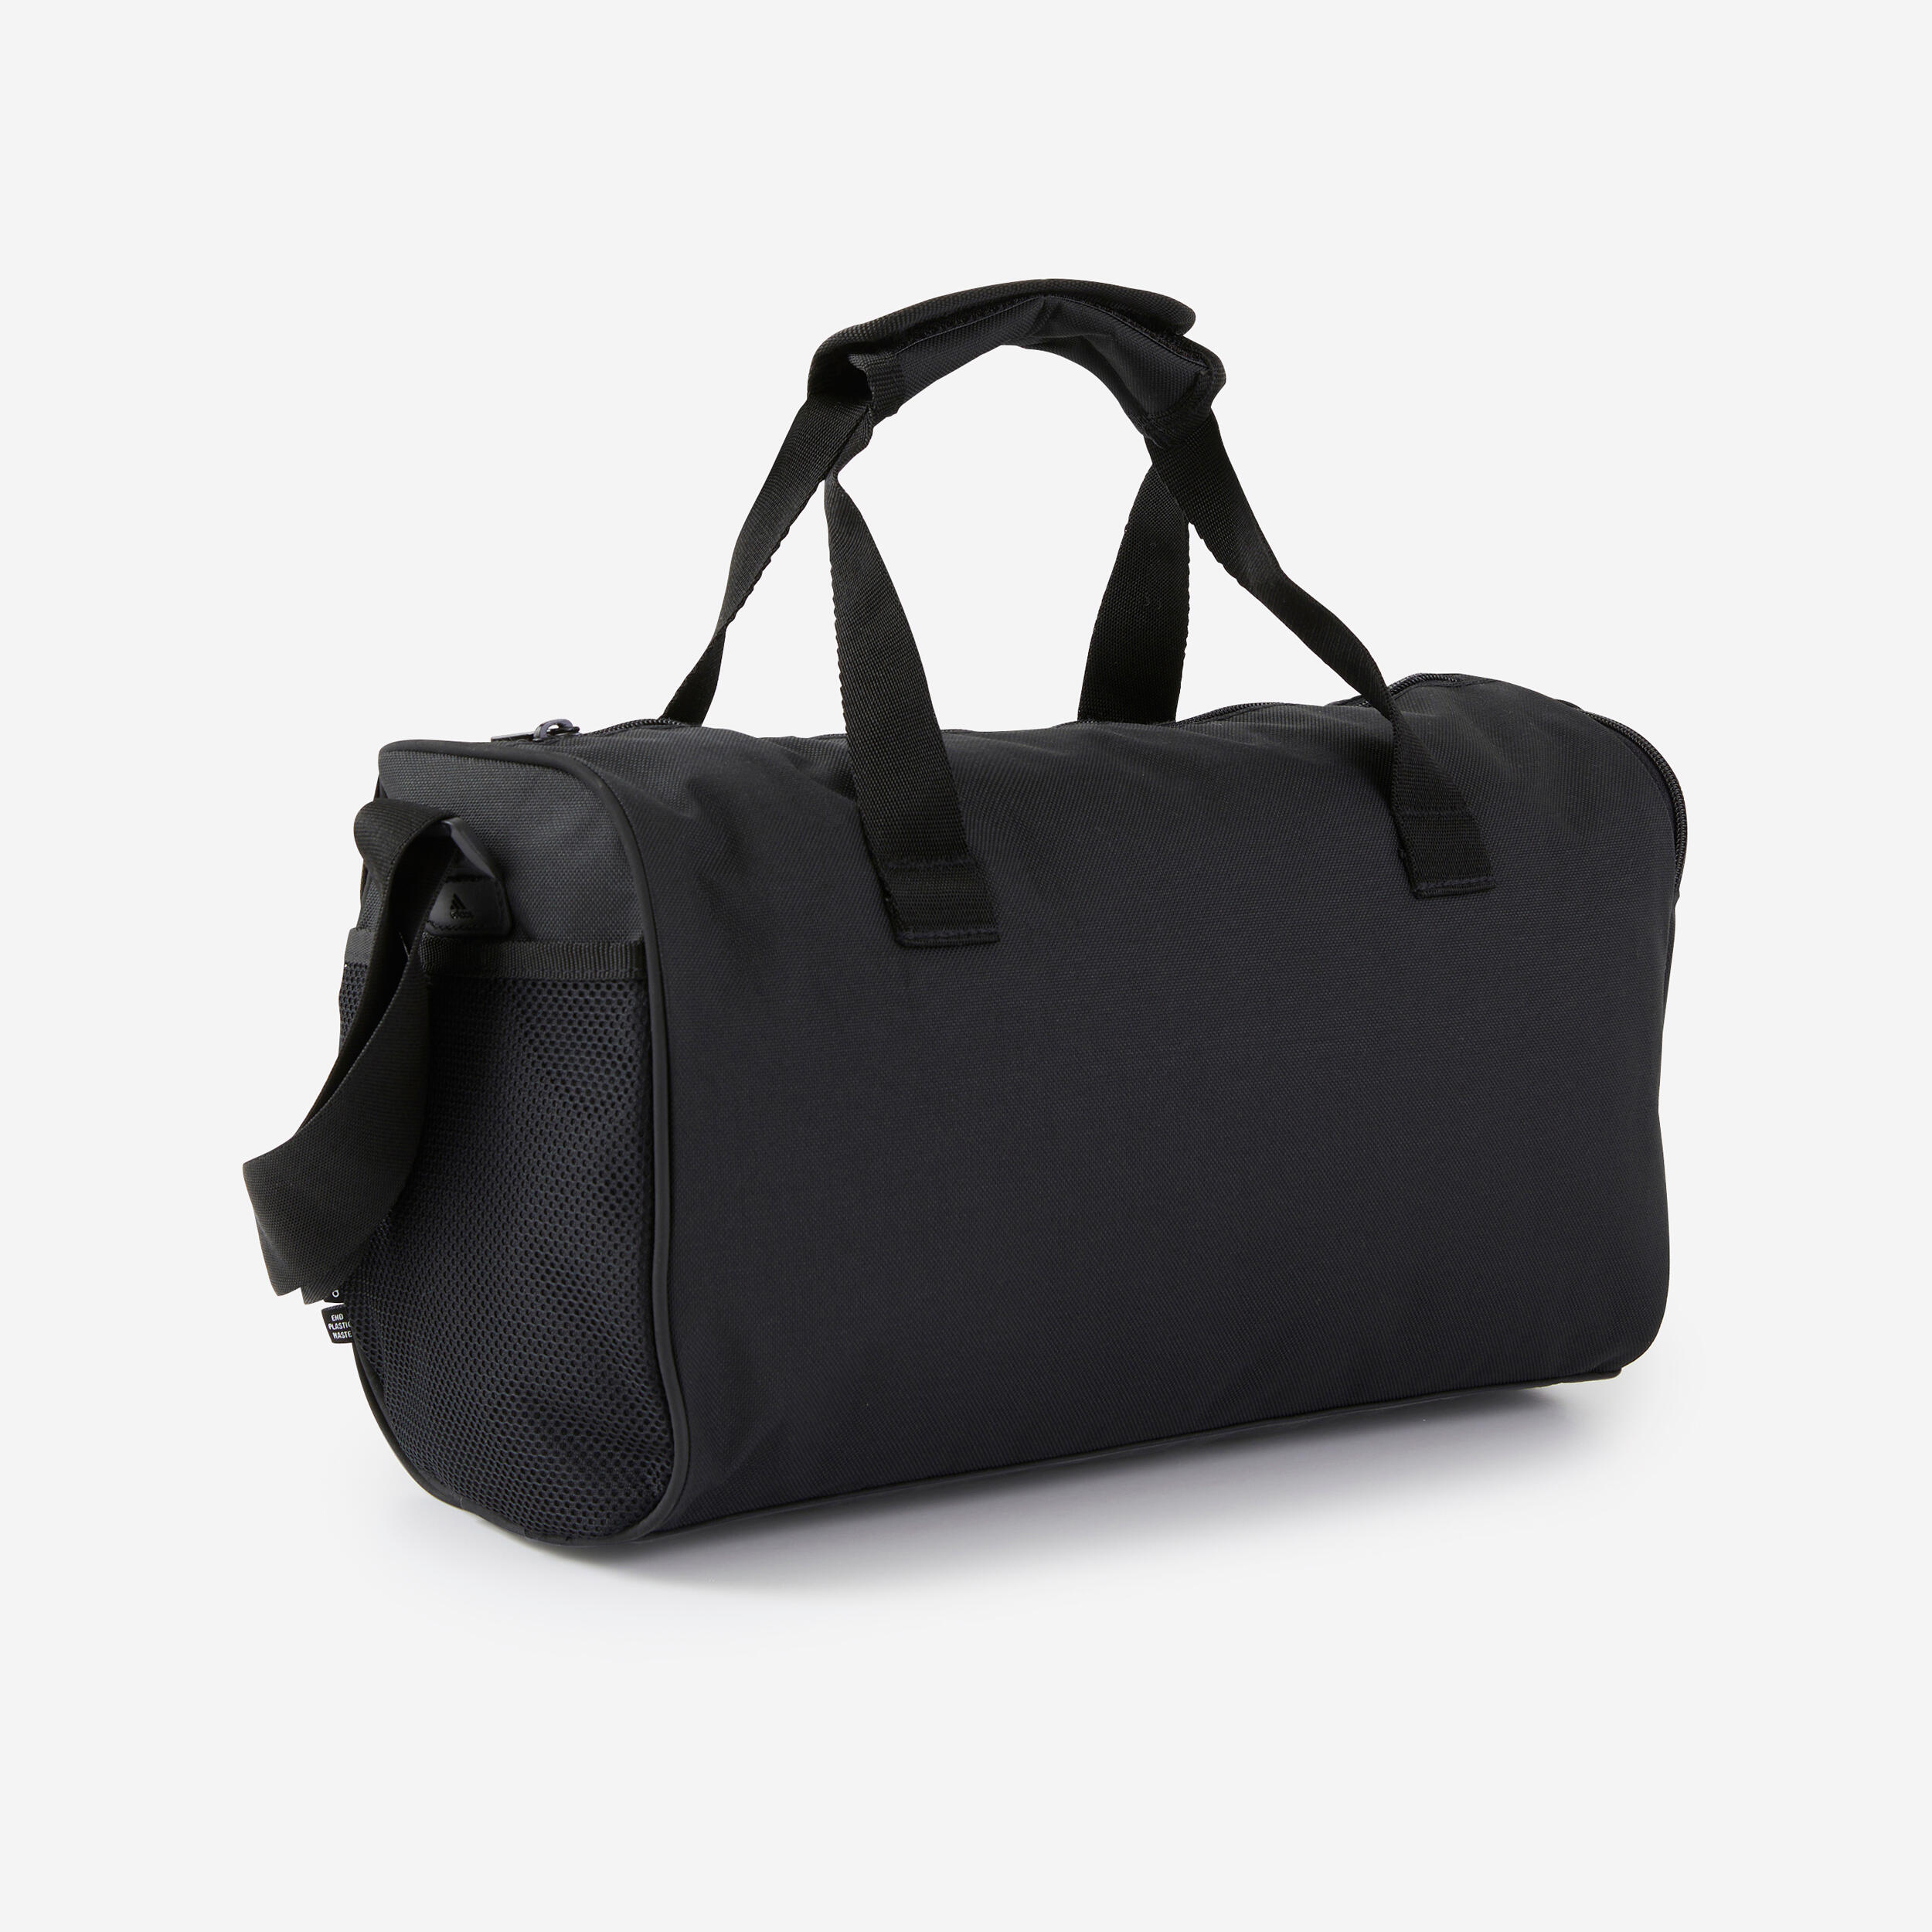 XS Duffel Bag - Black/White 4/6